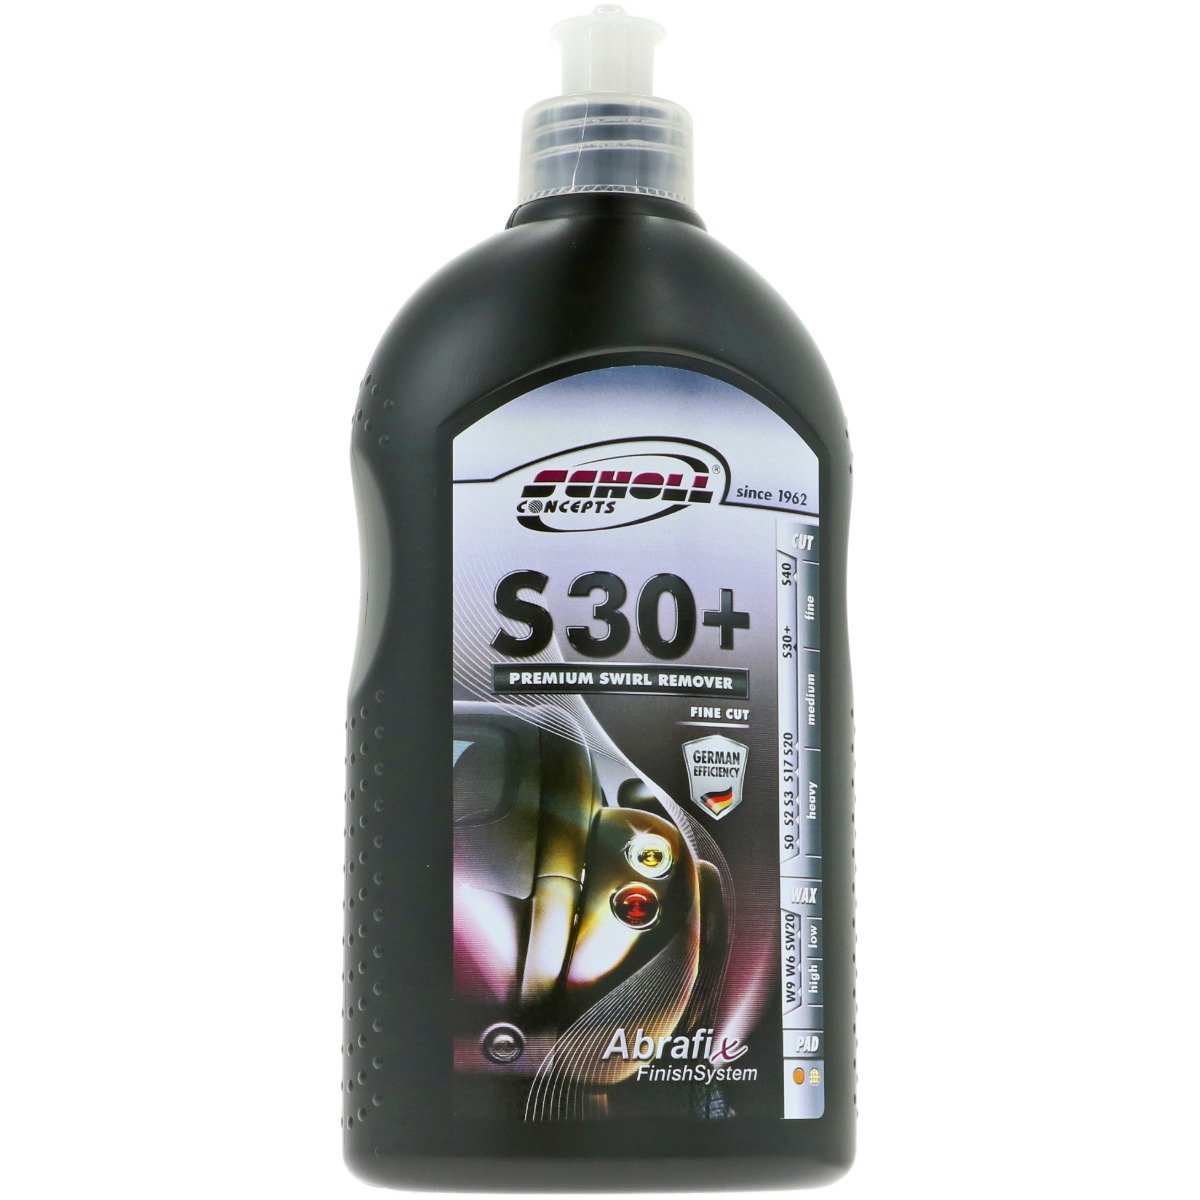 S30+ Premium Swirl Remover - 500 gram